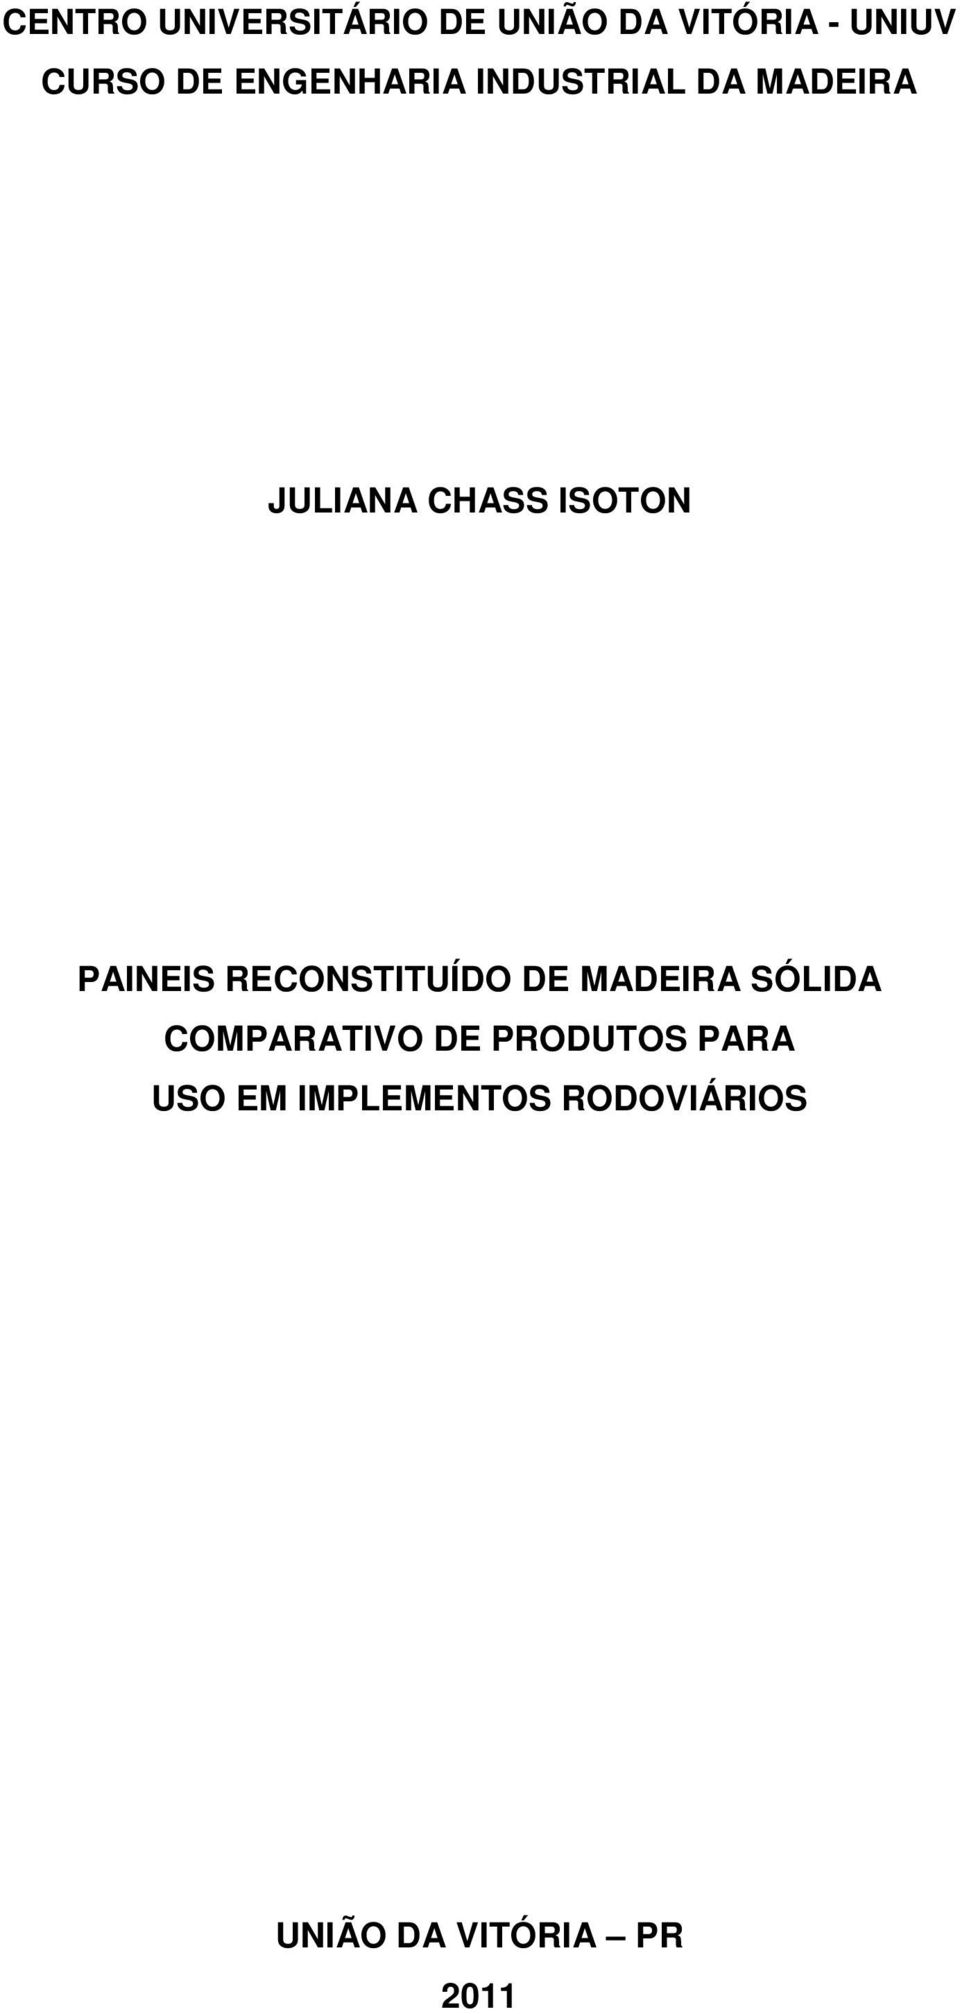 PAINEIS RECONSTITUÍDO DE MADEIRA SÓLIDA COMPARATIVO DE